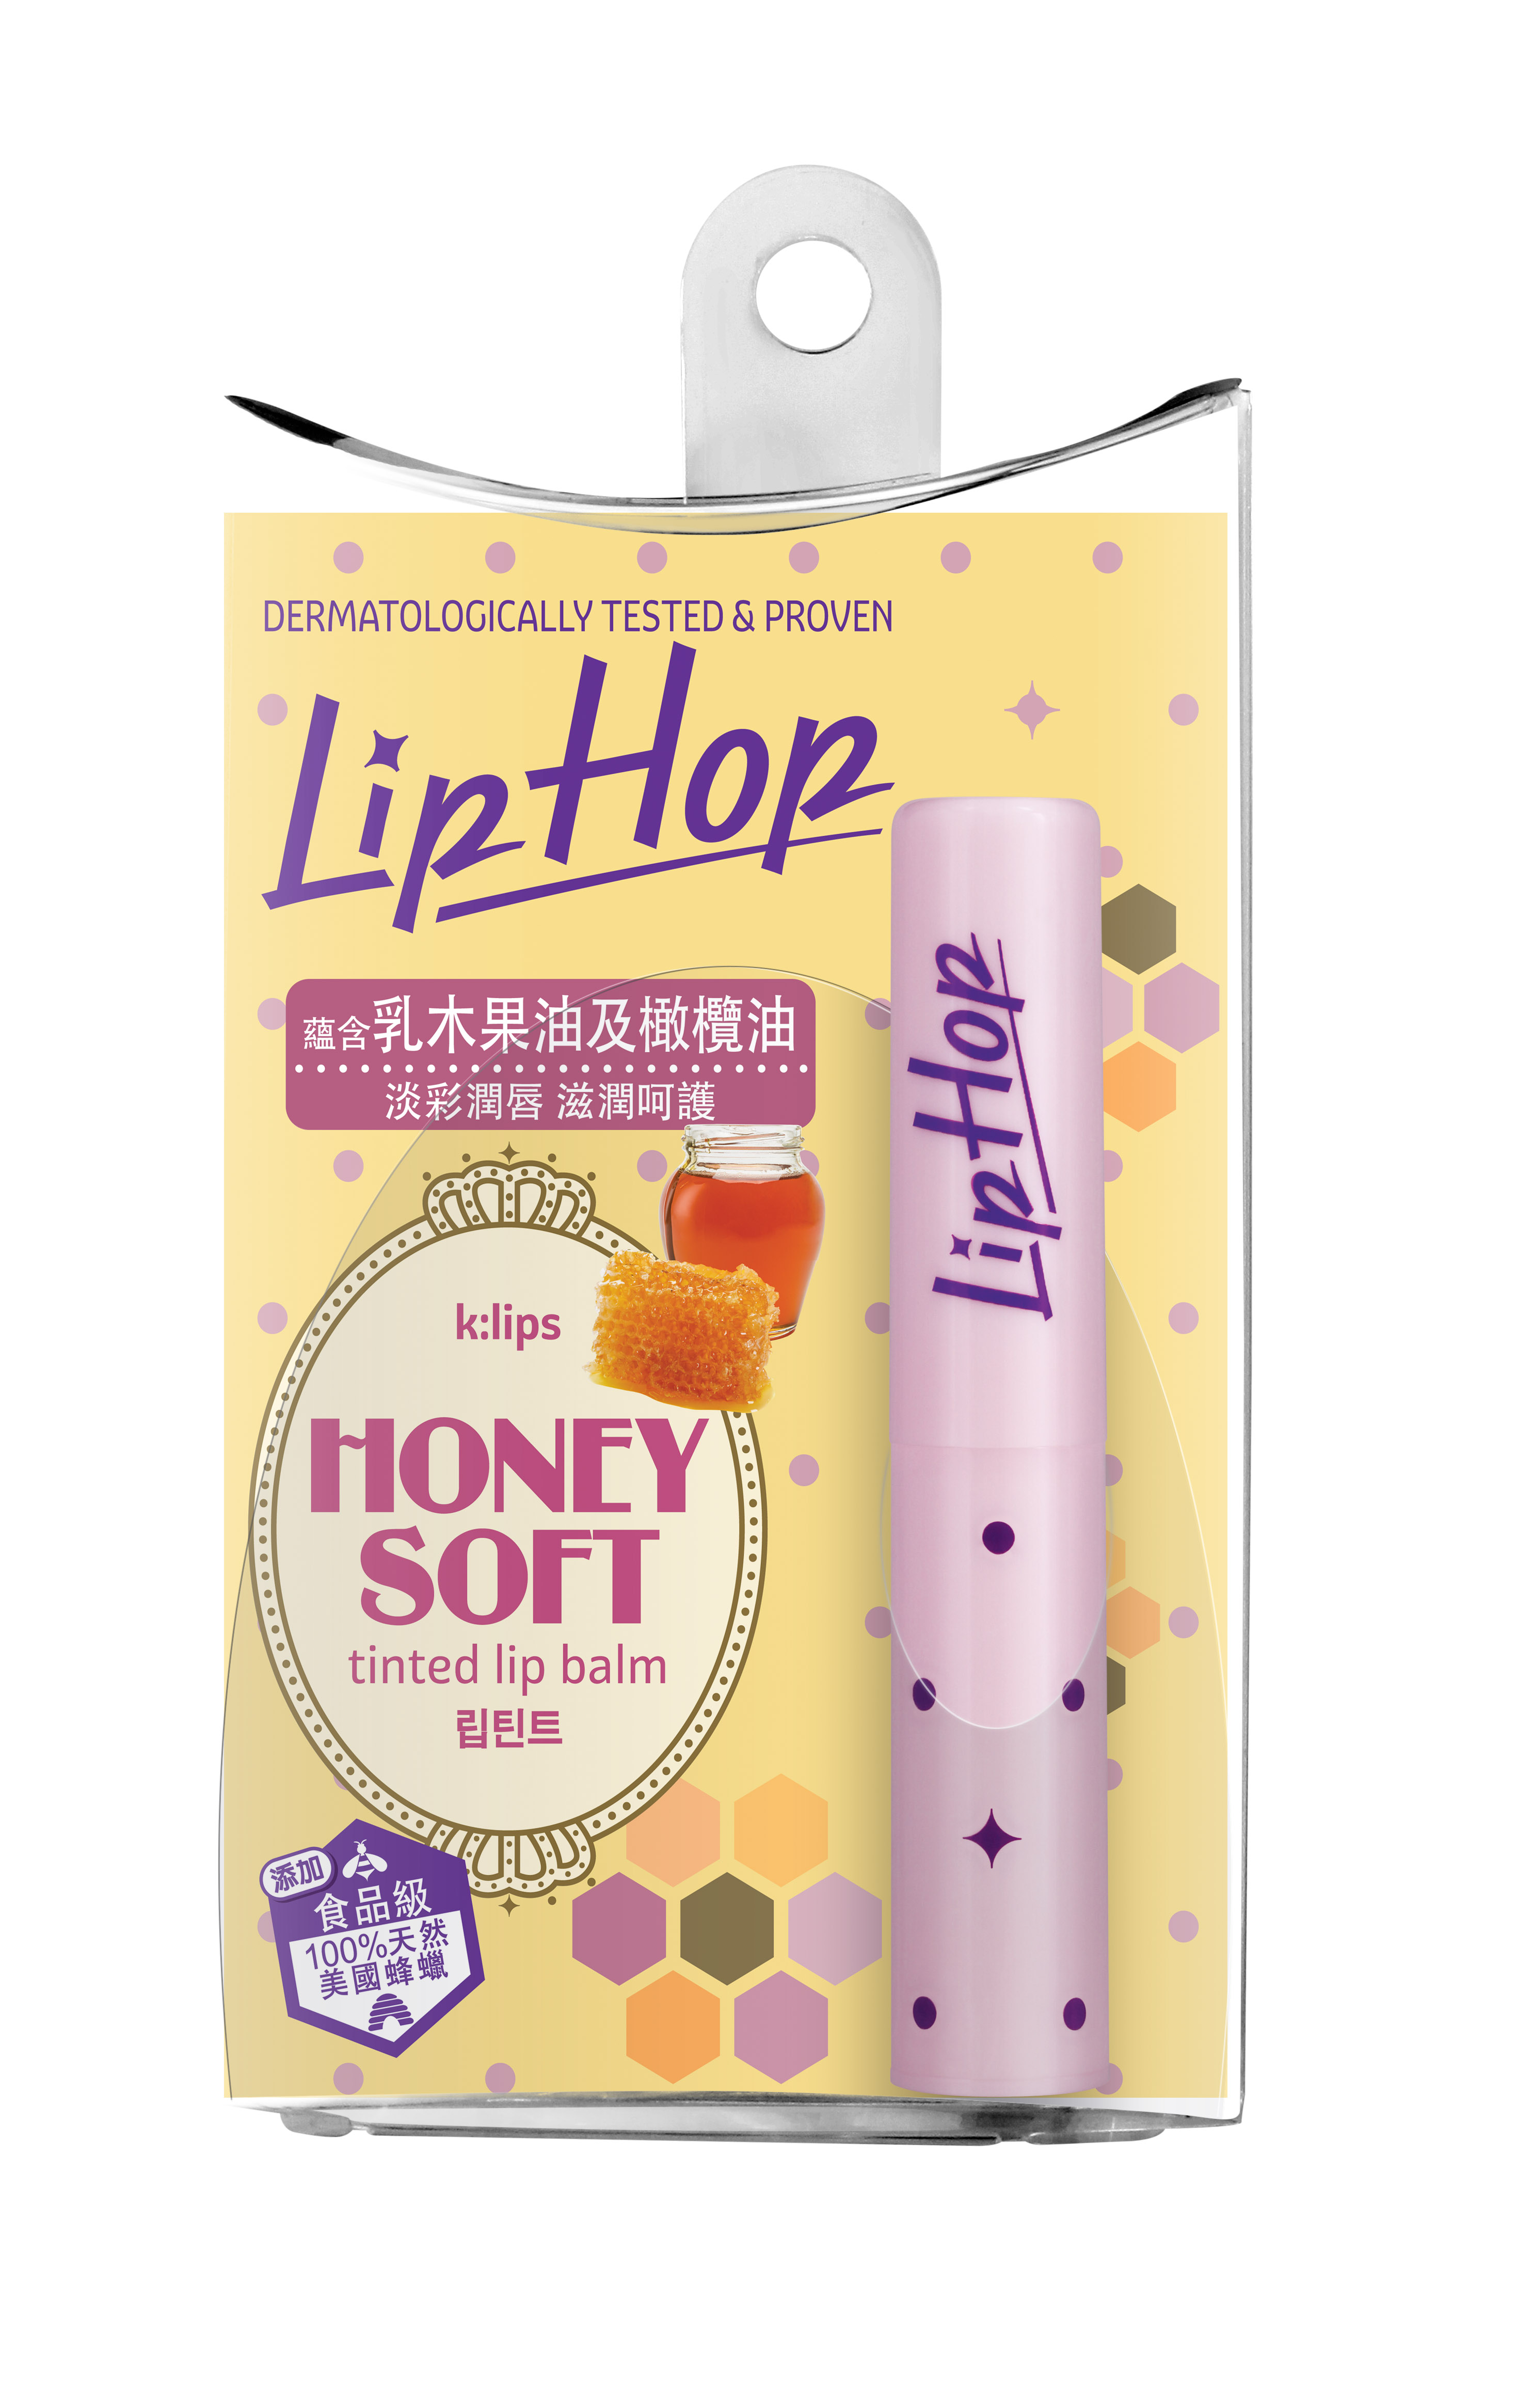 LipHop Honey Soft 淡彩潤唇膏，只需輕鬆一搽，則為雙唇添上淡淡色彩，為潤澤雙唇錦上添花。蘊含乳木果油及橄欖油，呵護柔潤。標準價：$41.9